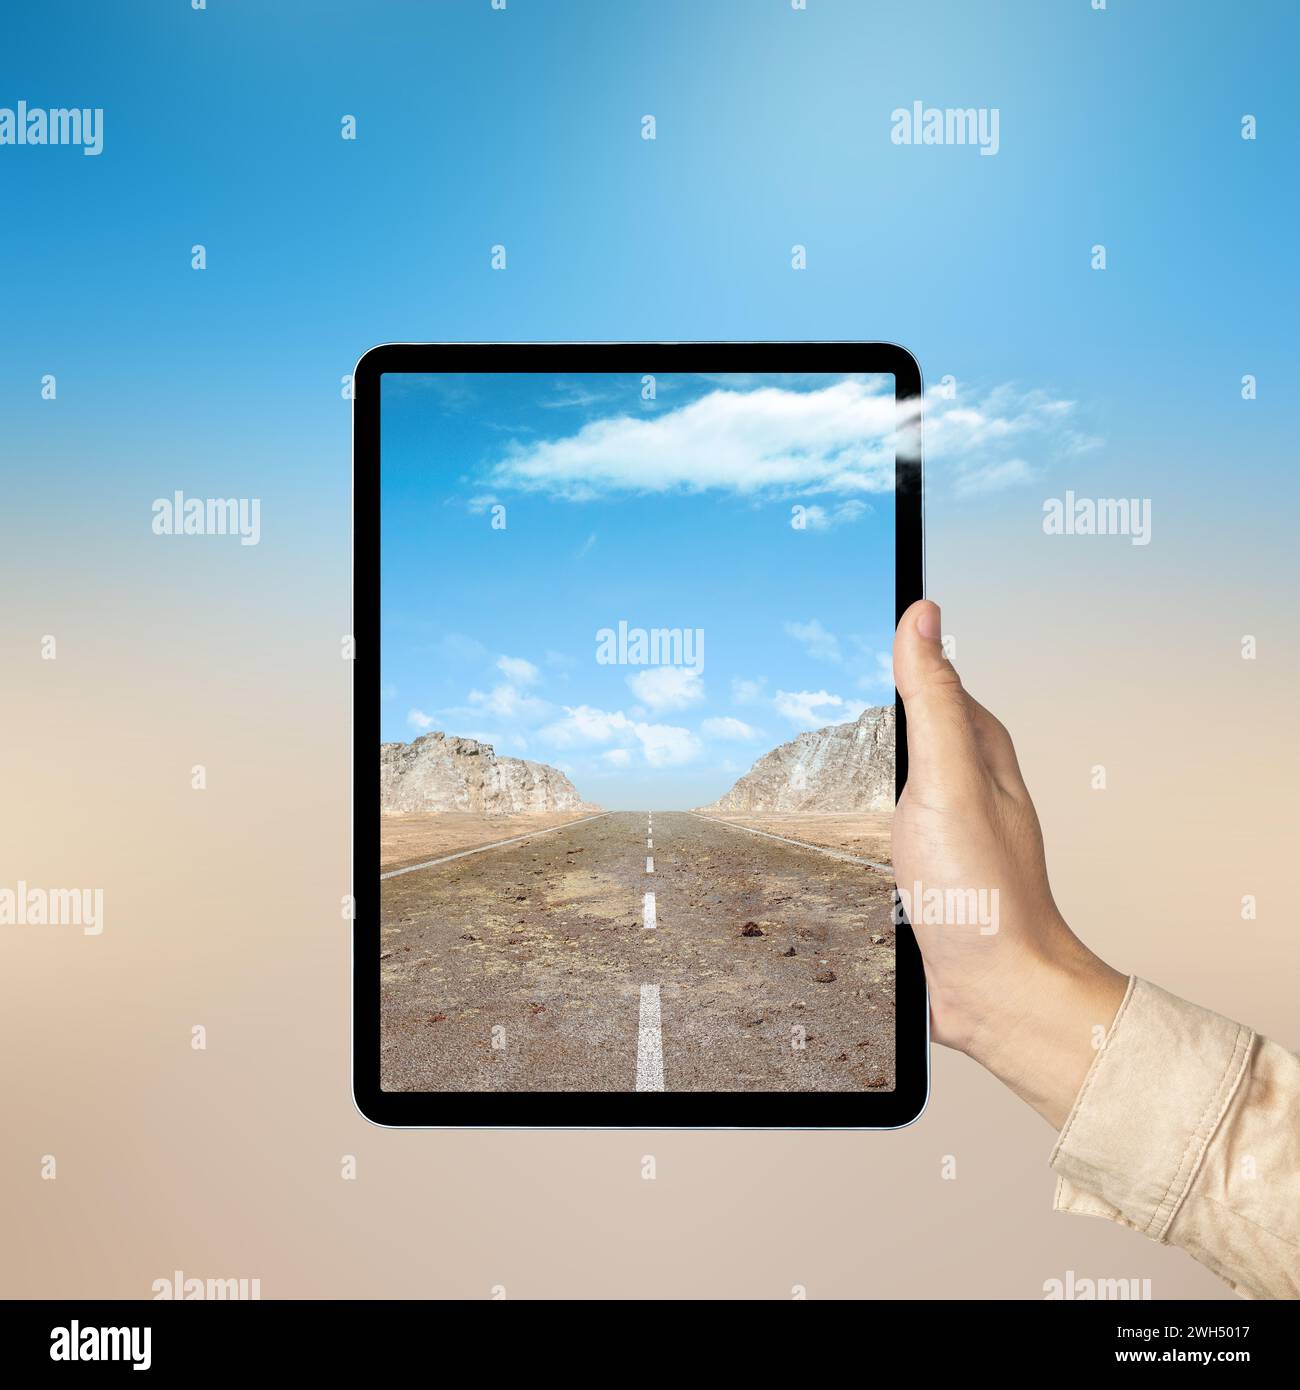 Mano humana que sostiene la tableta con una vista de la pantalla de una calle con colinas y vista del acantilado de roca con el cielo azul. Concepto de viaje Foto de stock